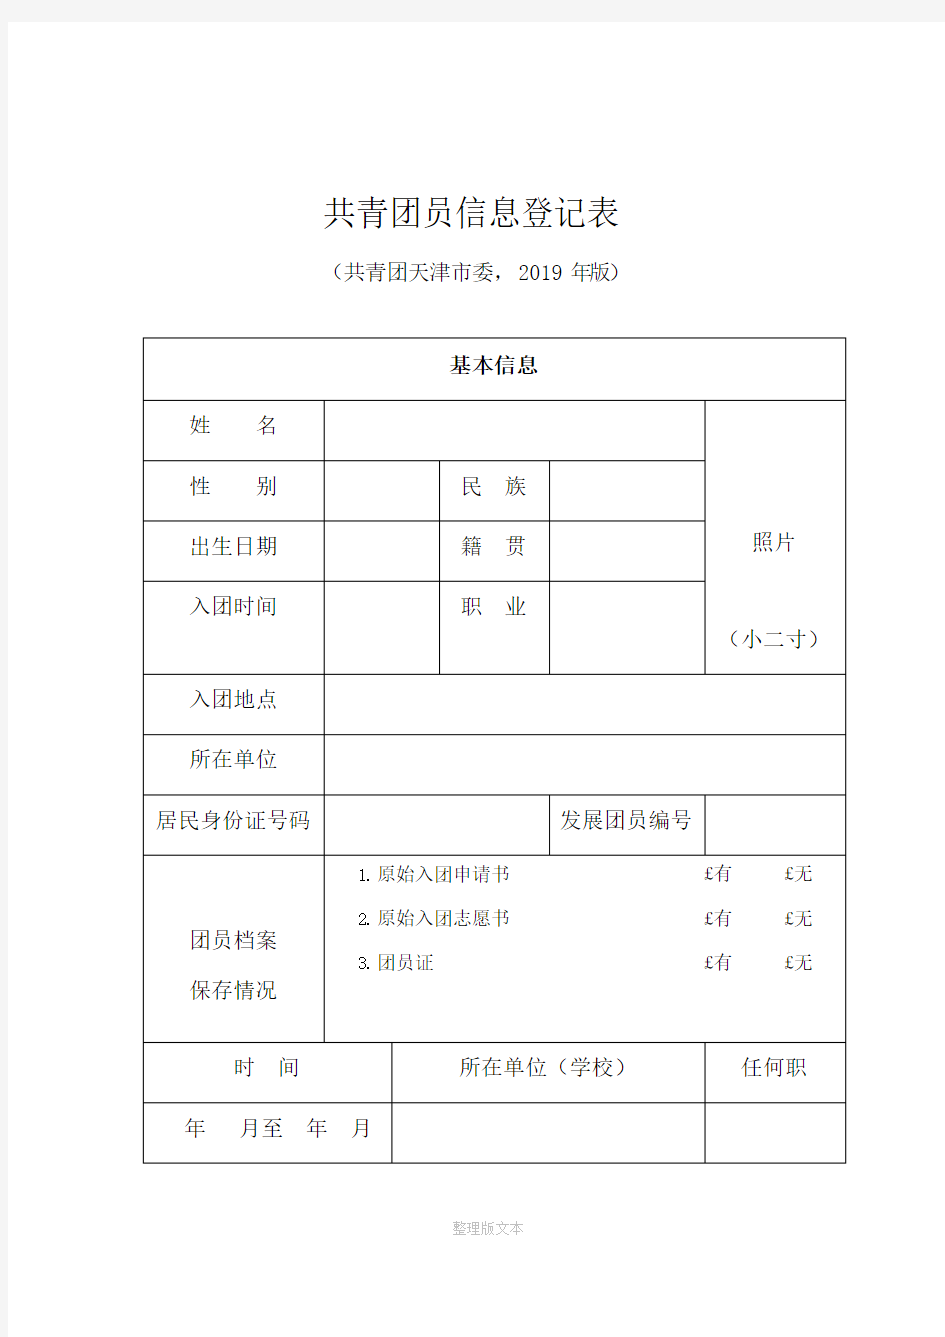 共青团员信息登记表(打印版)